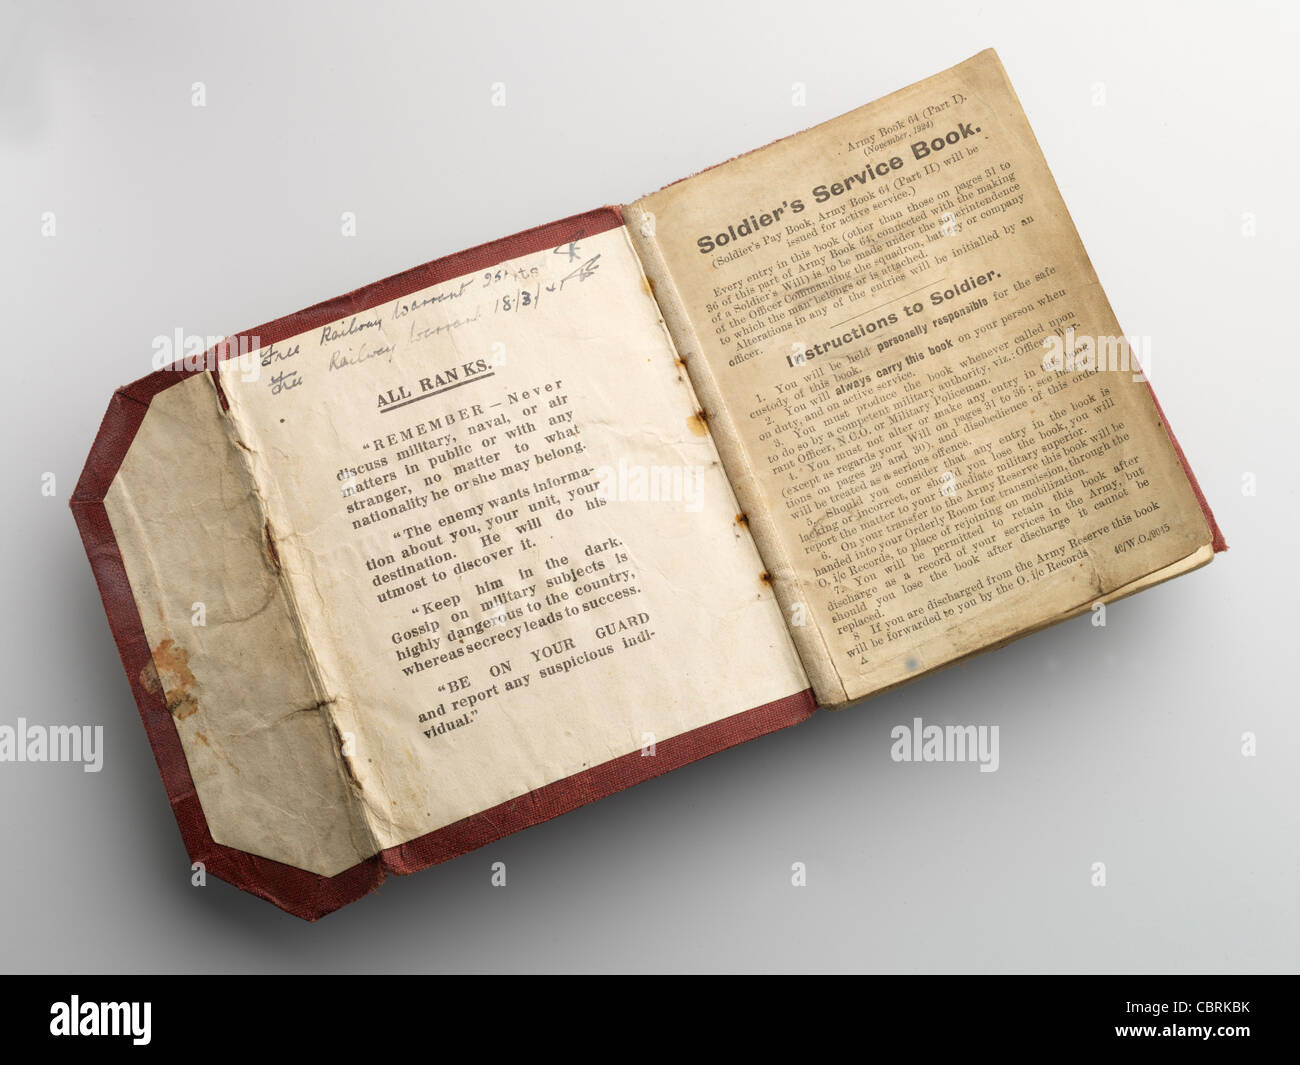 Paybook y Soldiers Service Book de la 2 Guerra Mundial. REINO UNIDO Foto de stock